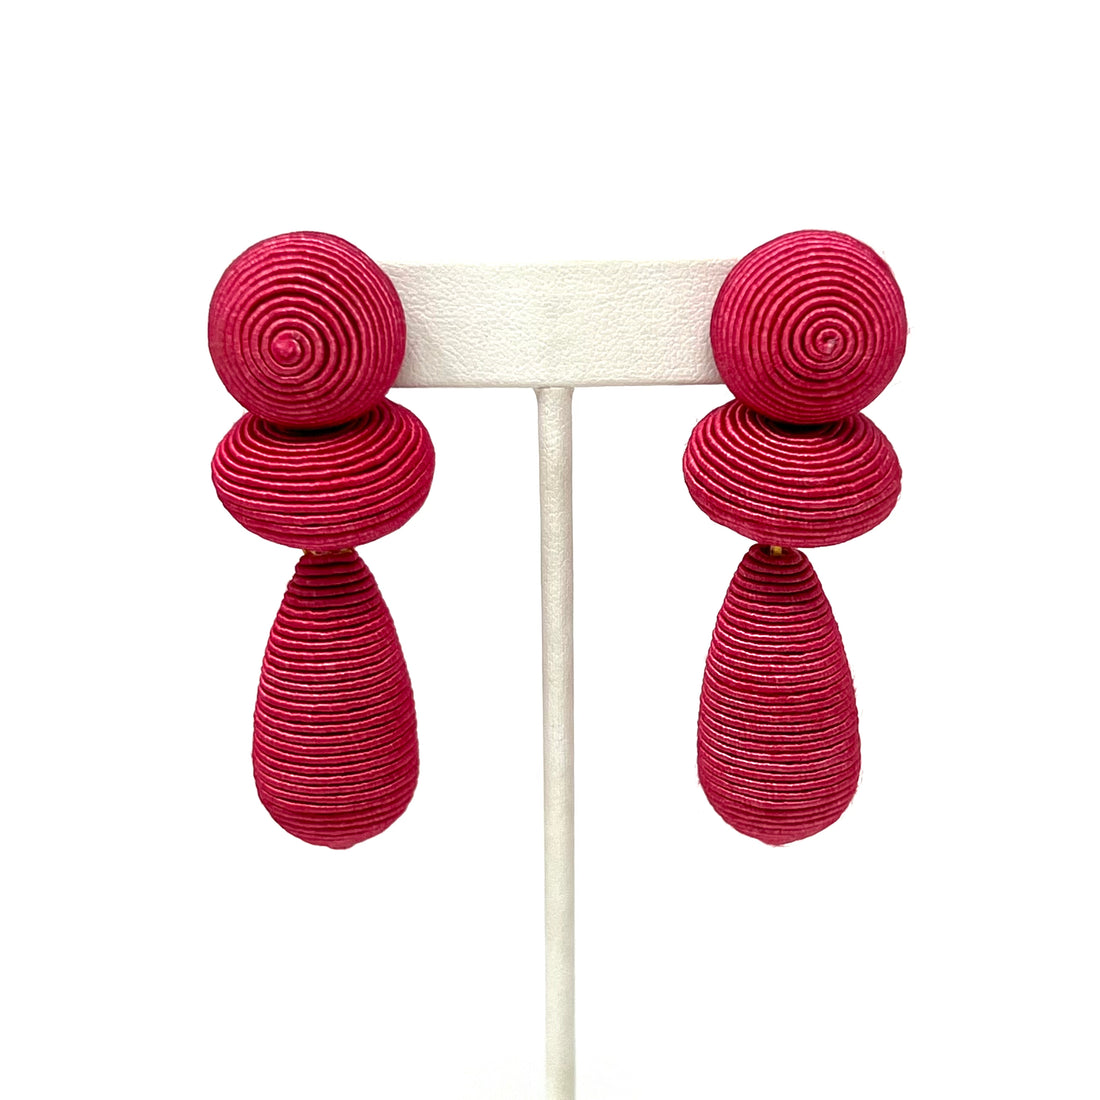 Thread Drop Earrings in Hot Pink